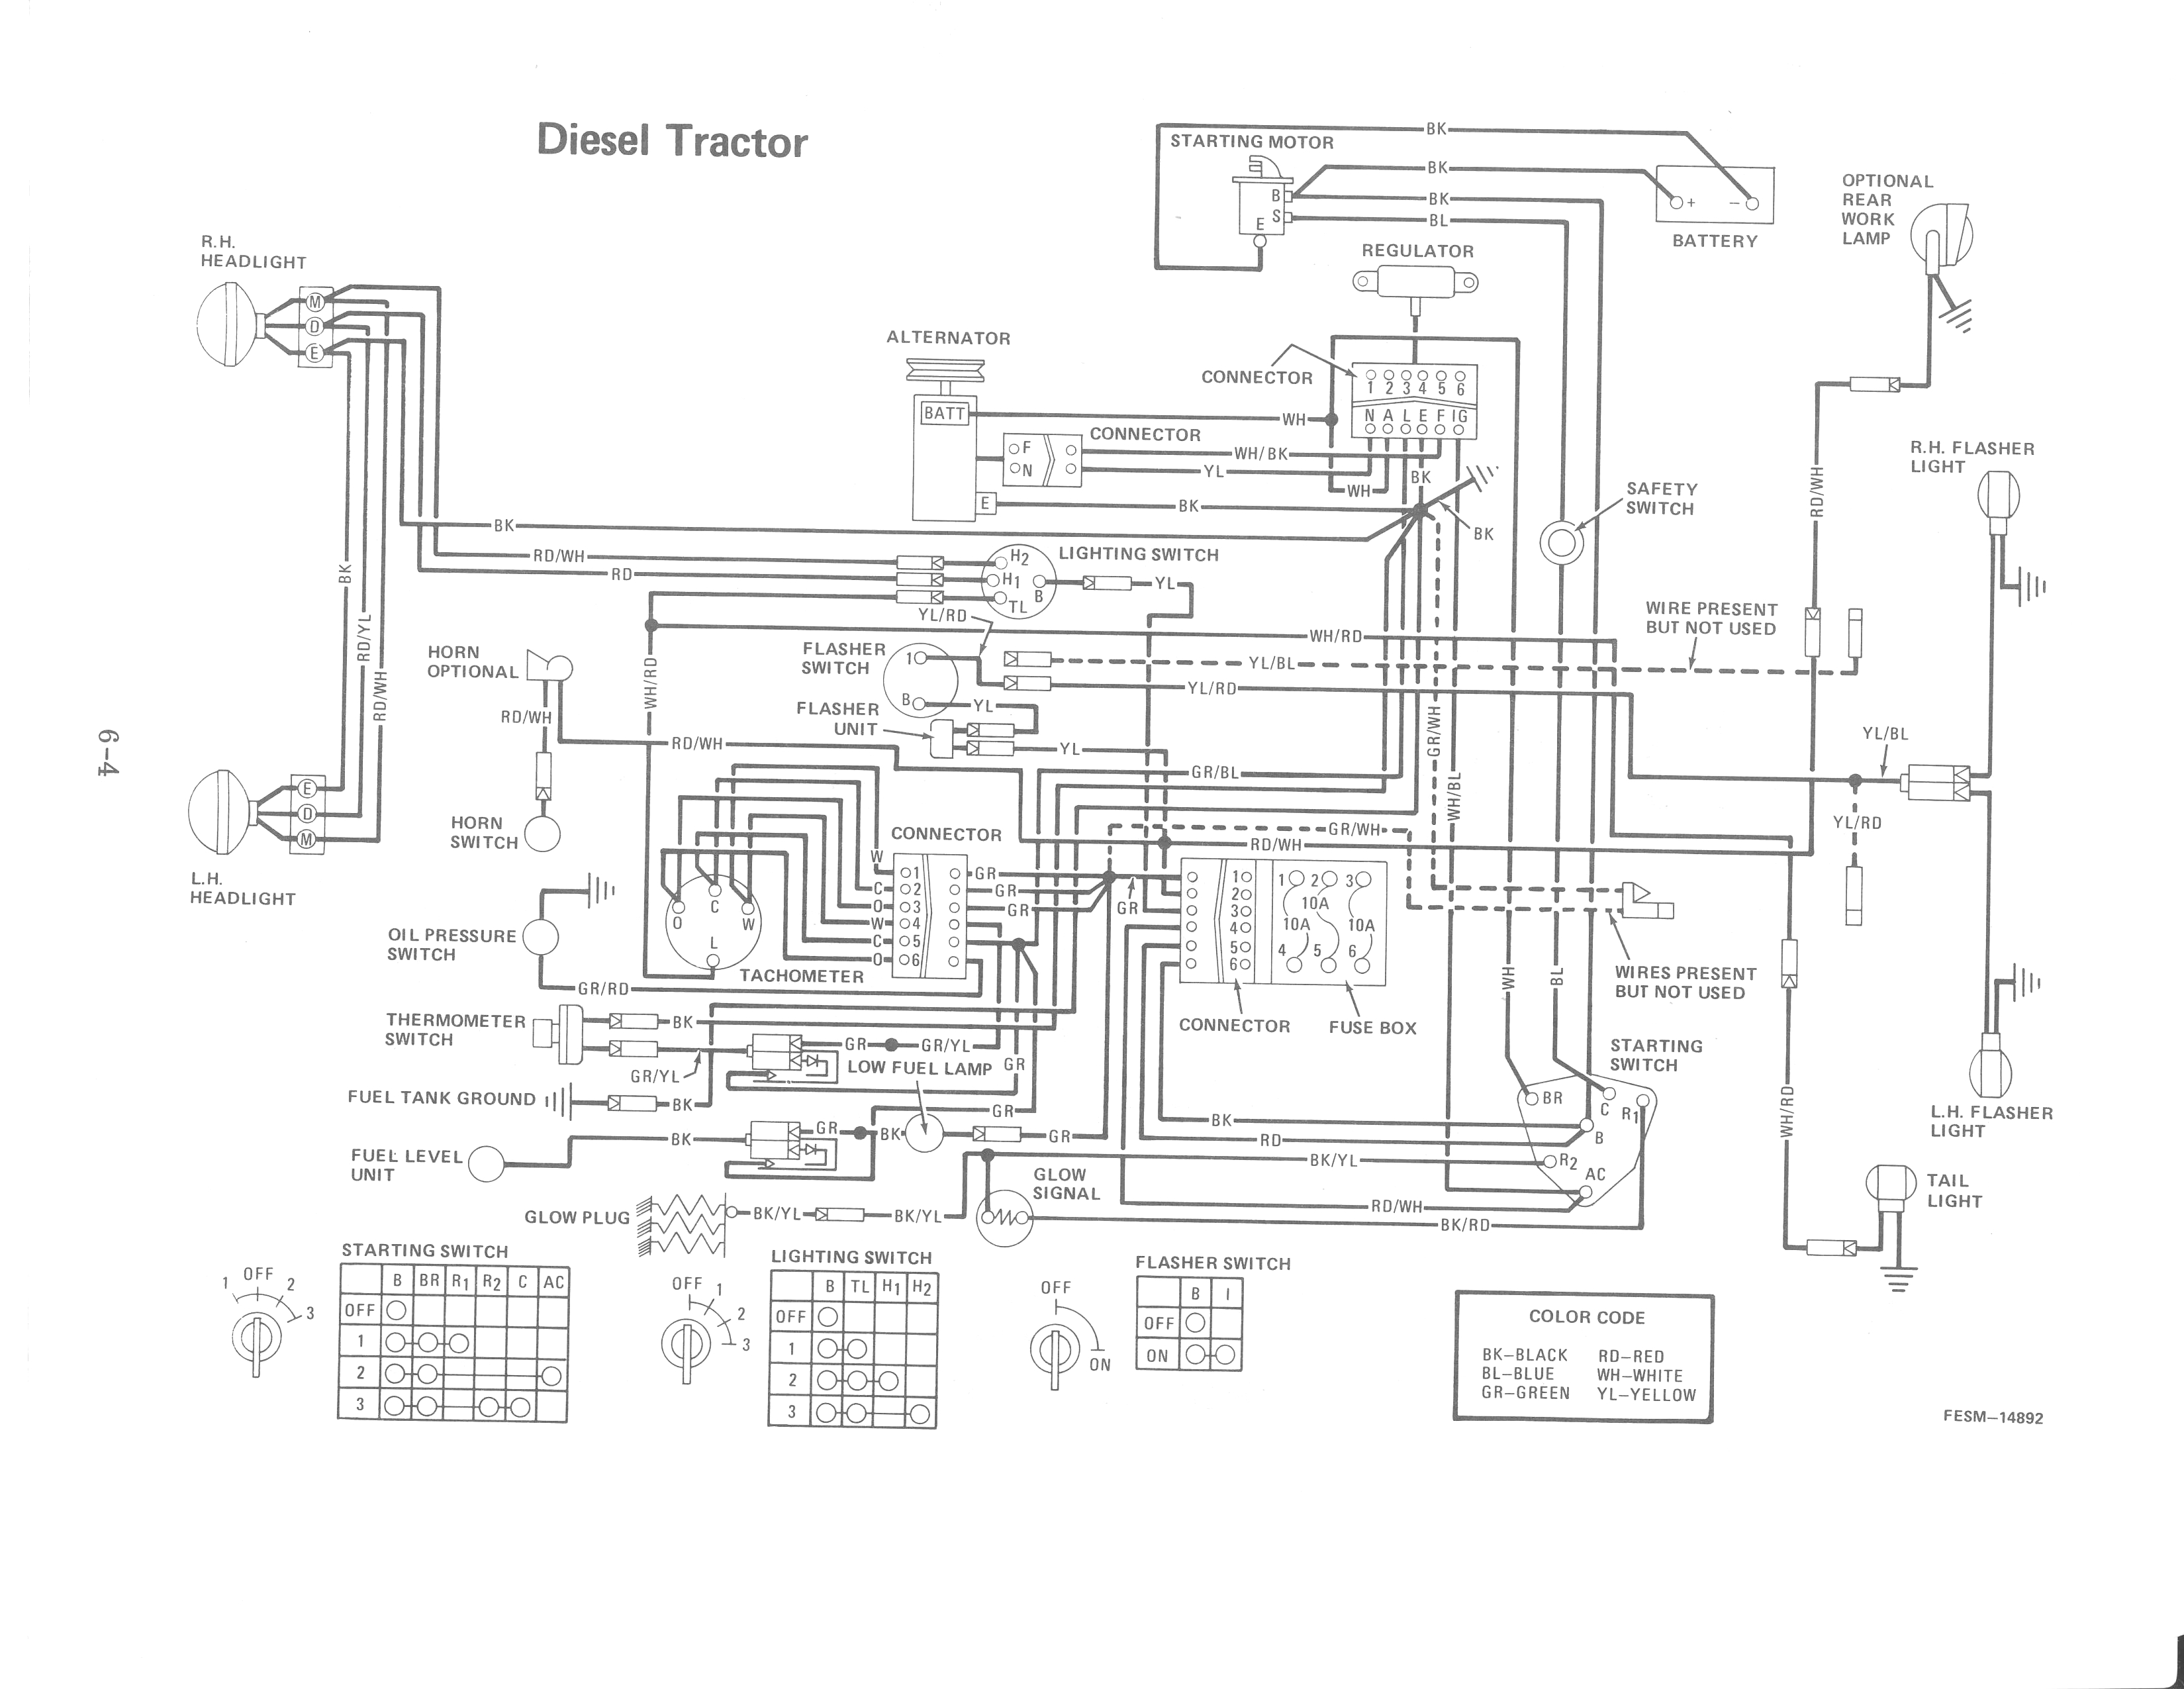 Electrical Schematic Diesel Engine